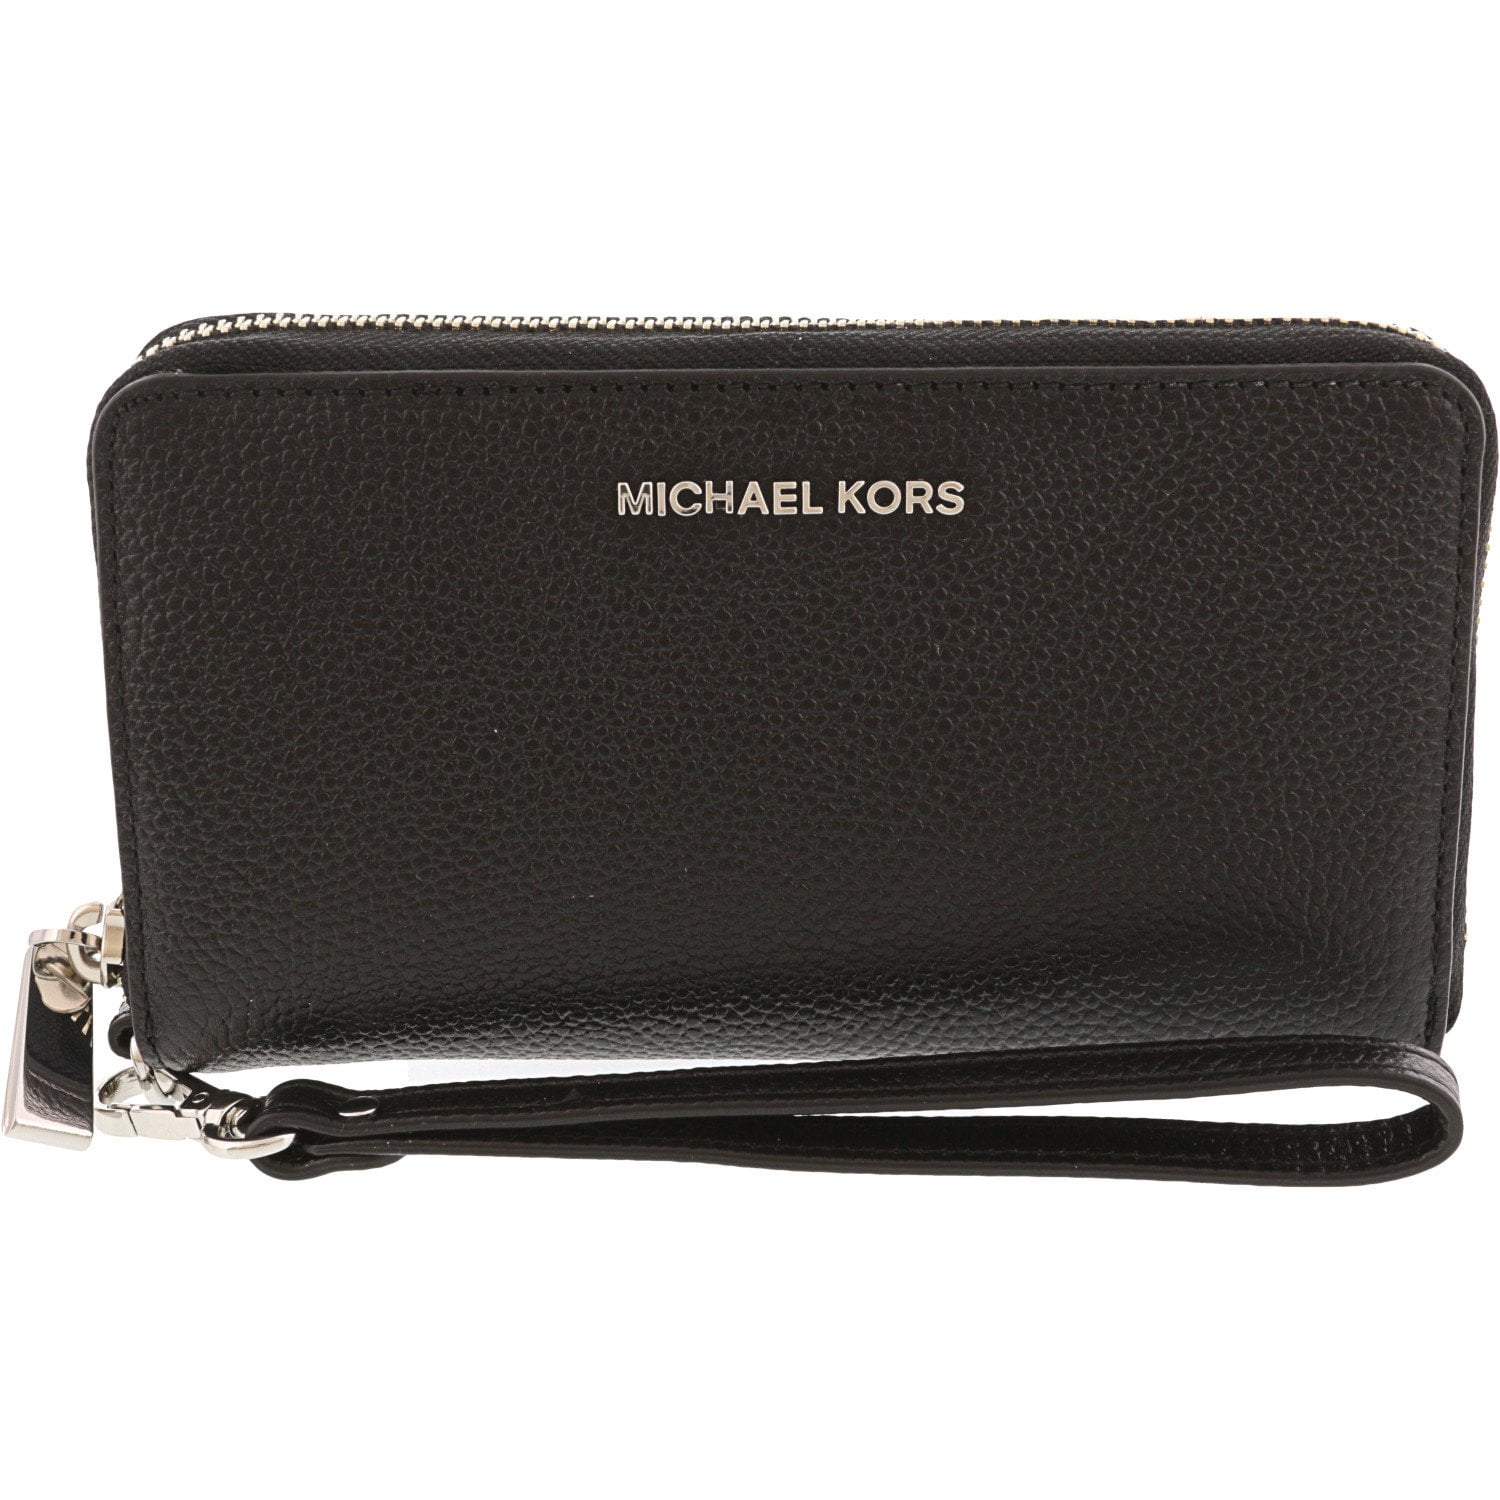 Michael Kors Smartphone Ladies Large Black Leather Wristlet ...